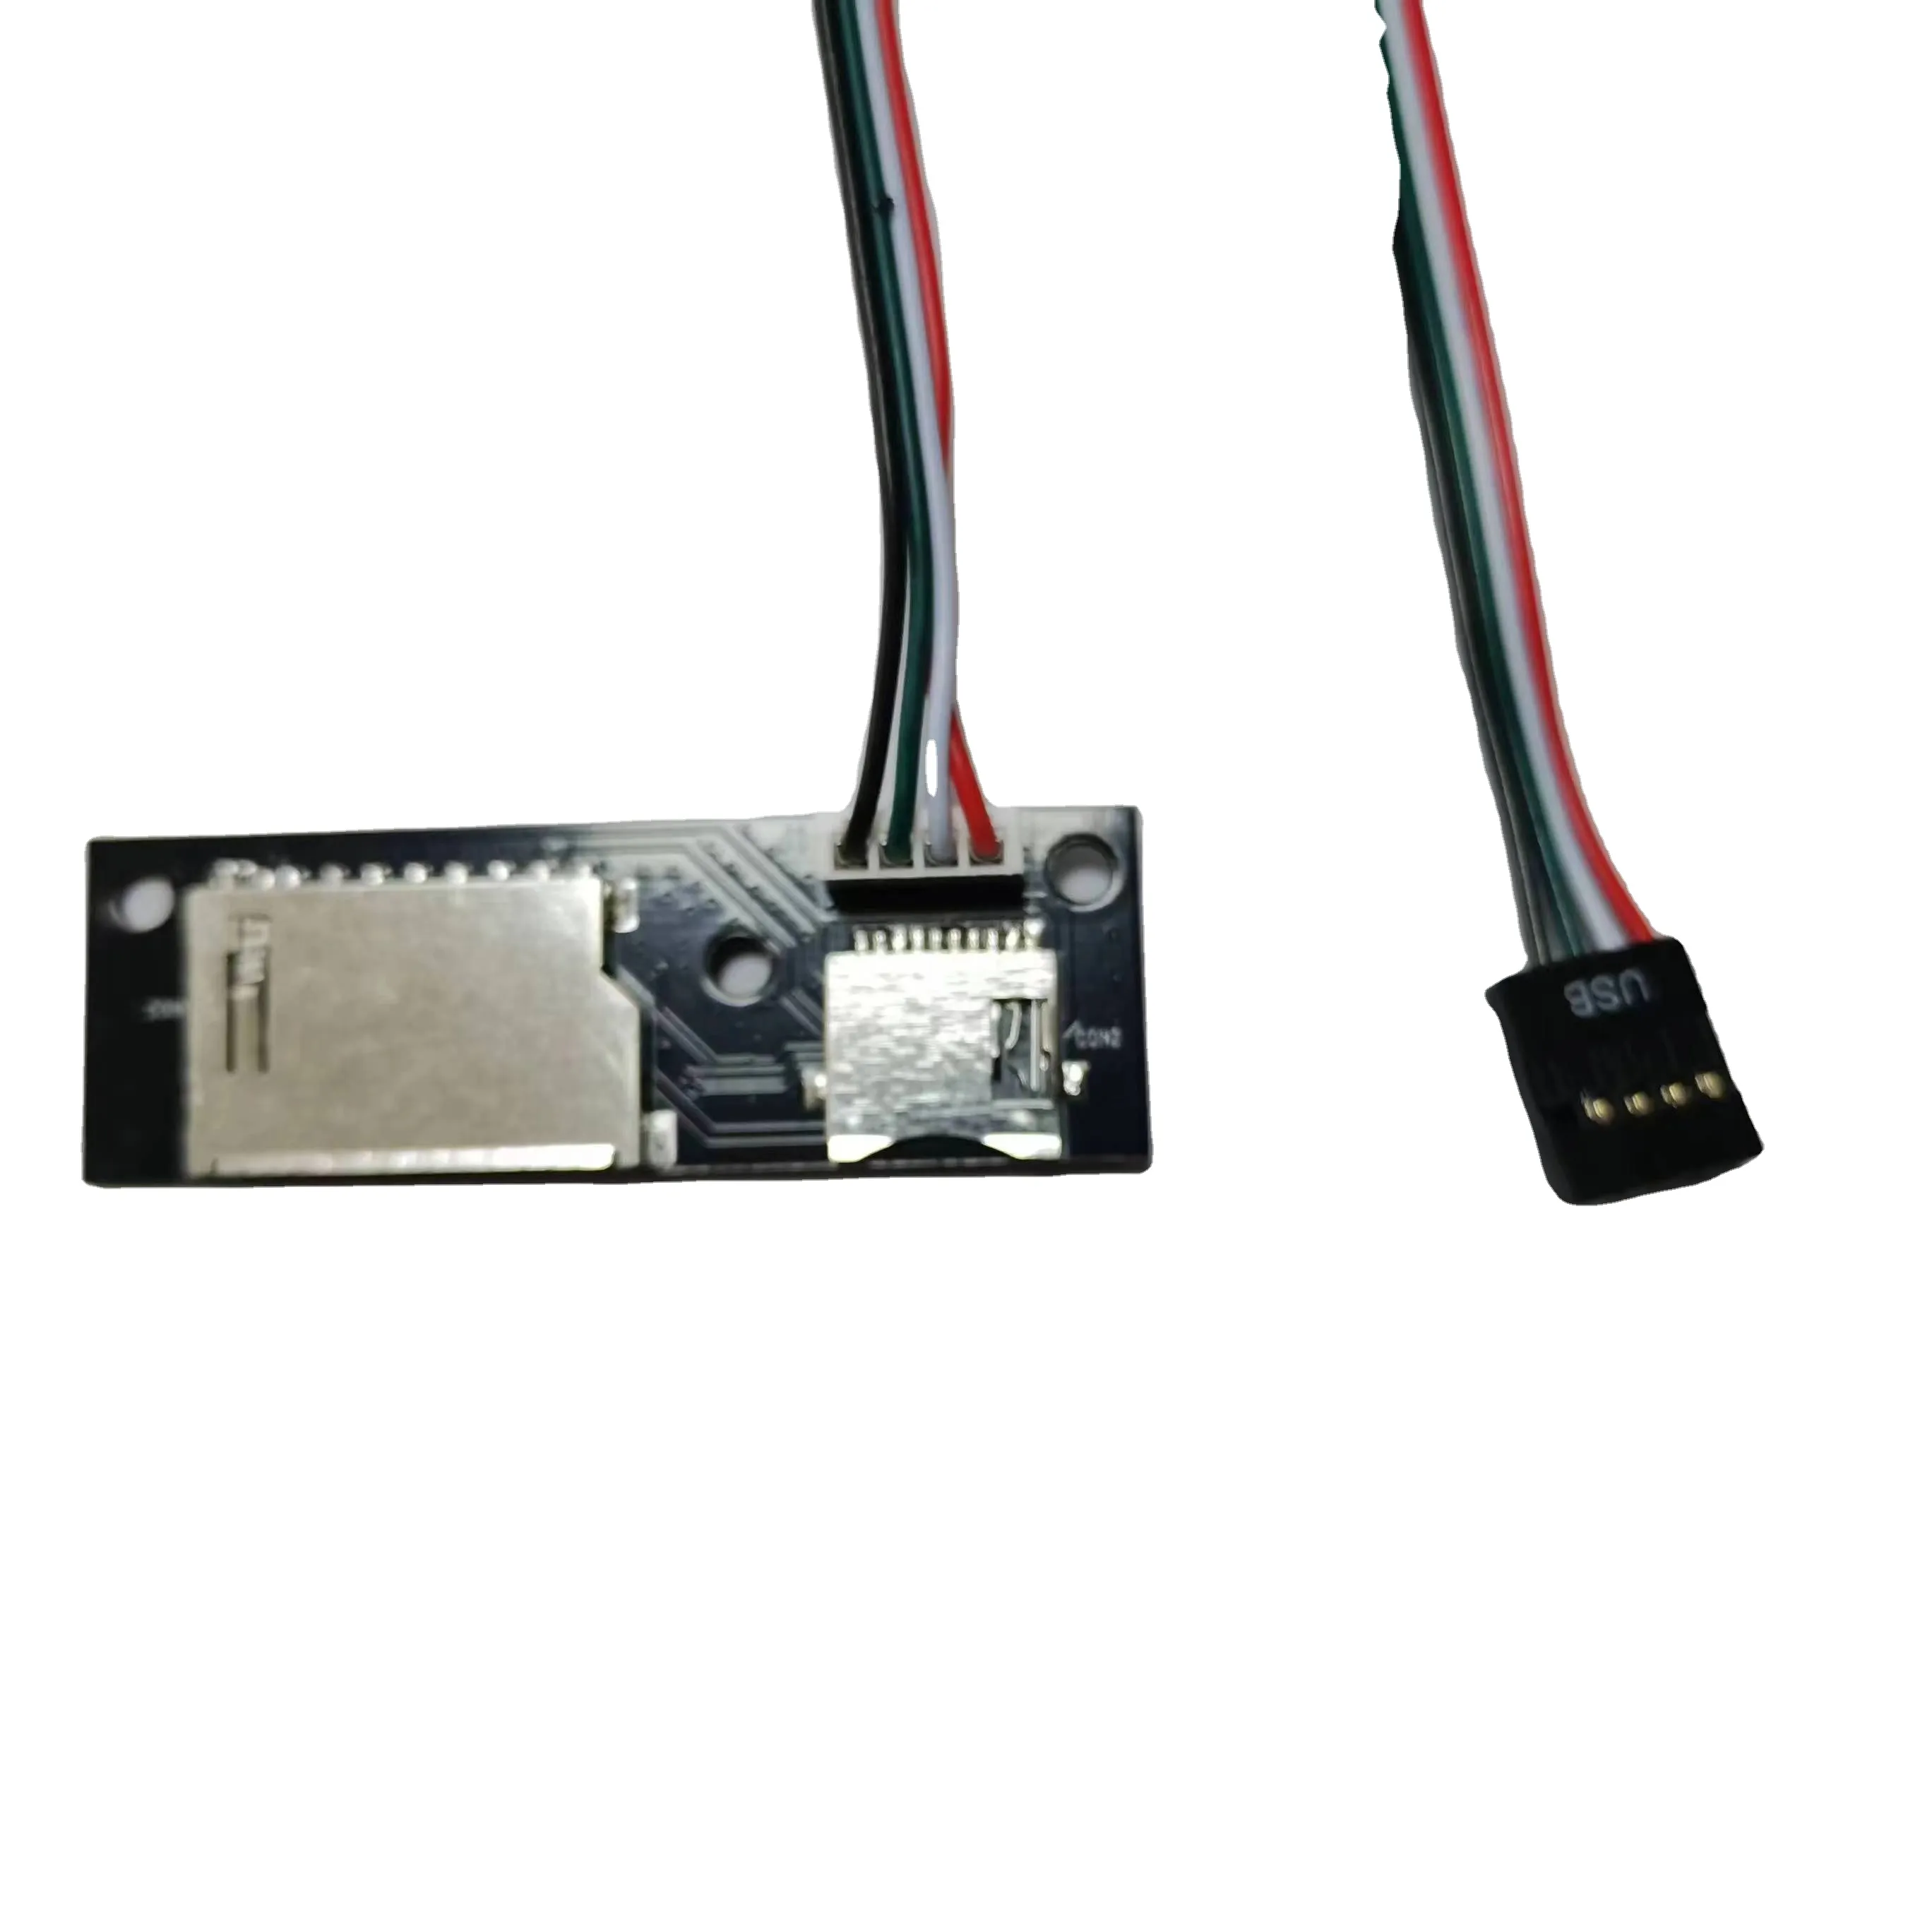 Multi internal card reader pcba TF/SDHC card reader for decktop